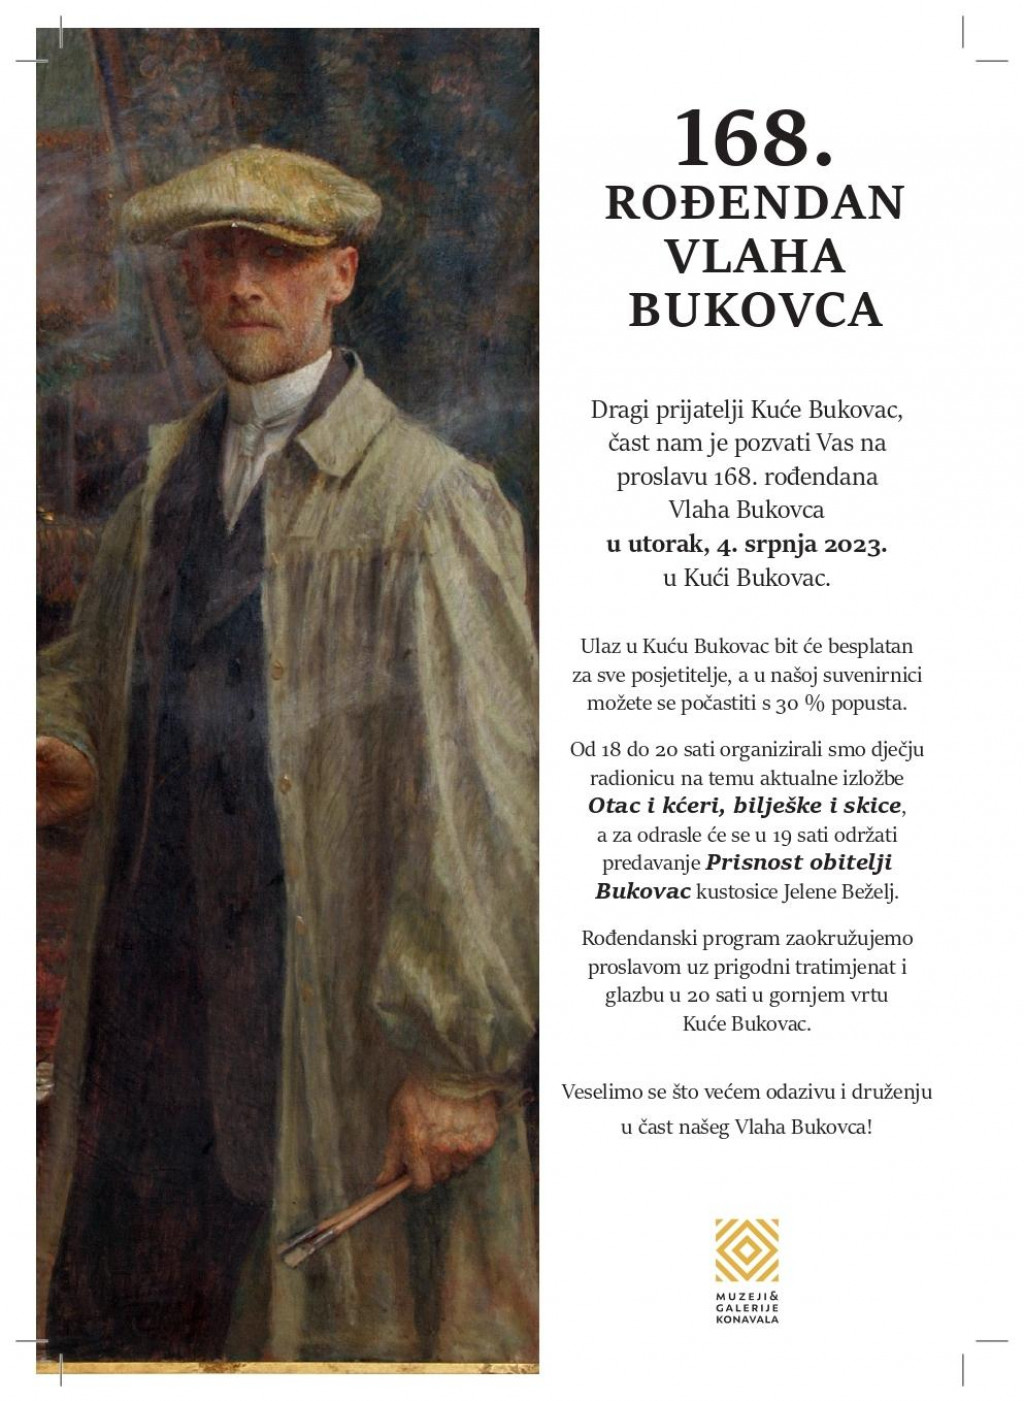 &lt;p&gt;Muzeji i galerije Konavala pozivaju na proslavu 168. rođendana Vlaha Bukovca&lt;/p&gt;